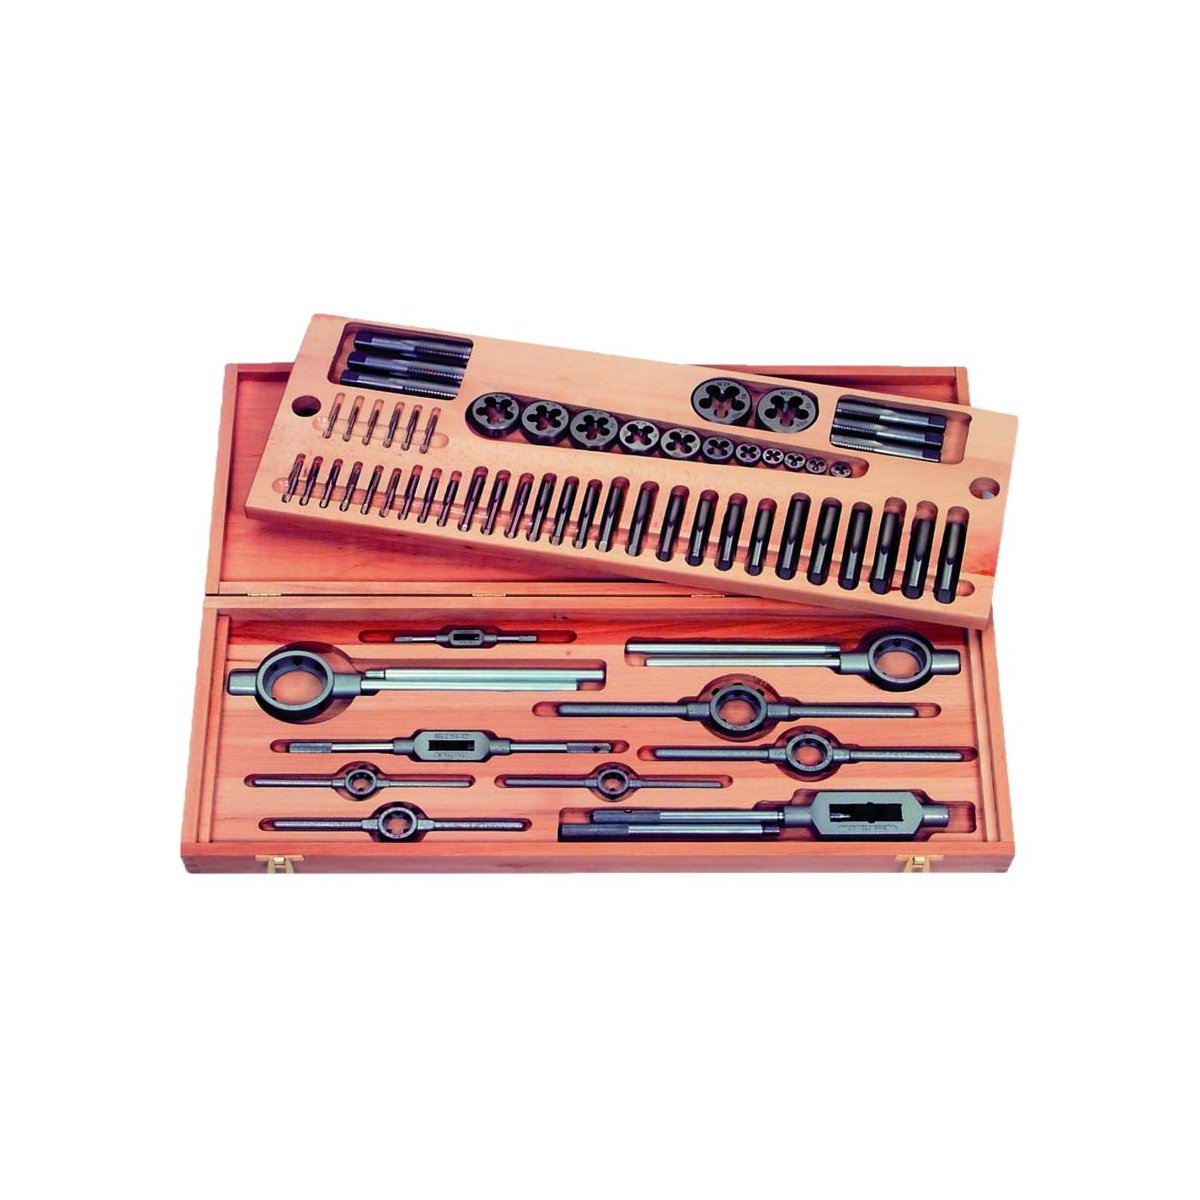 Набор резьбонарезного инструмента No 6003 HSS, 43 пр., M3-M4-M5-M6-M8-M10-M12-M14-M16, деревянный кейс